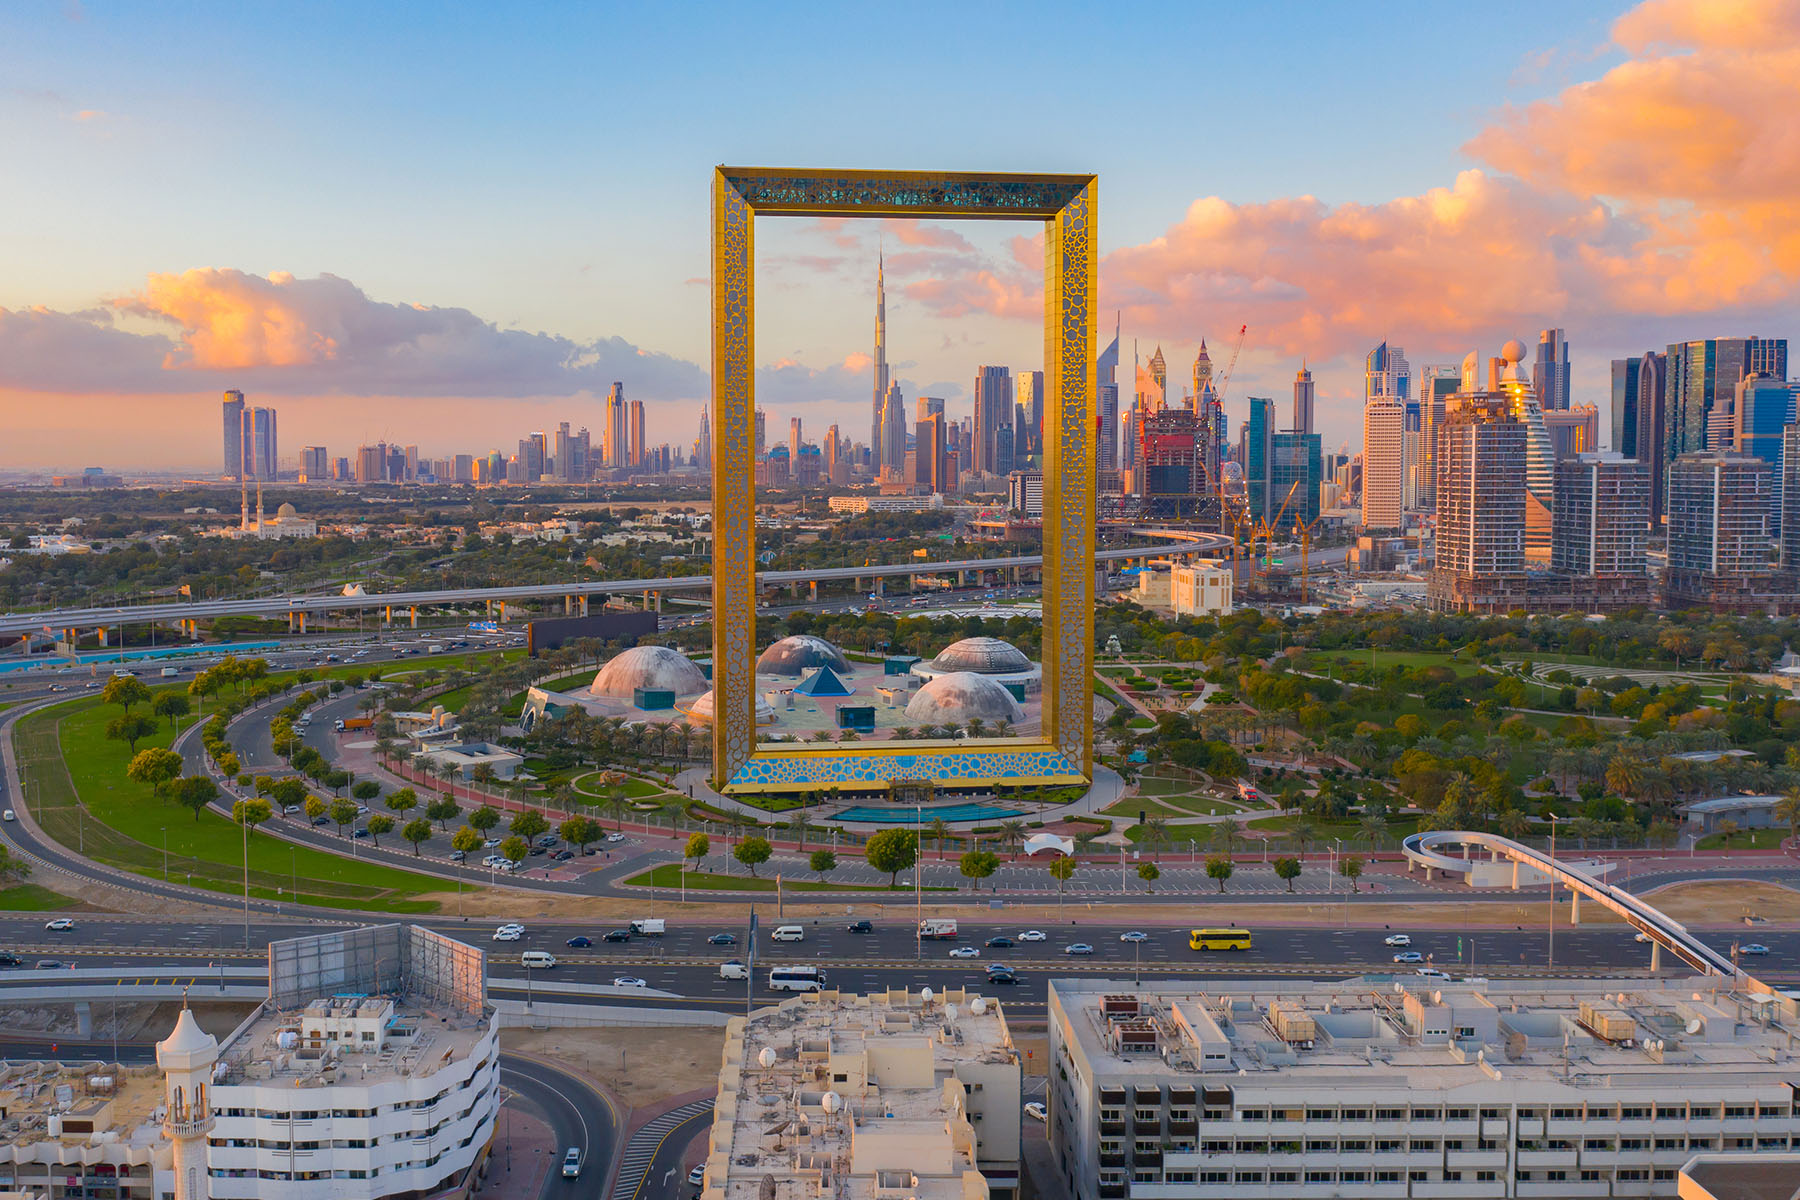 The Dubai Frame attractions in Dubai